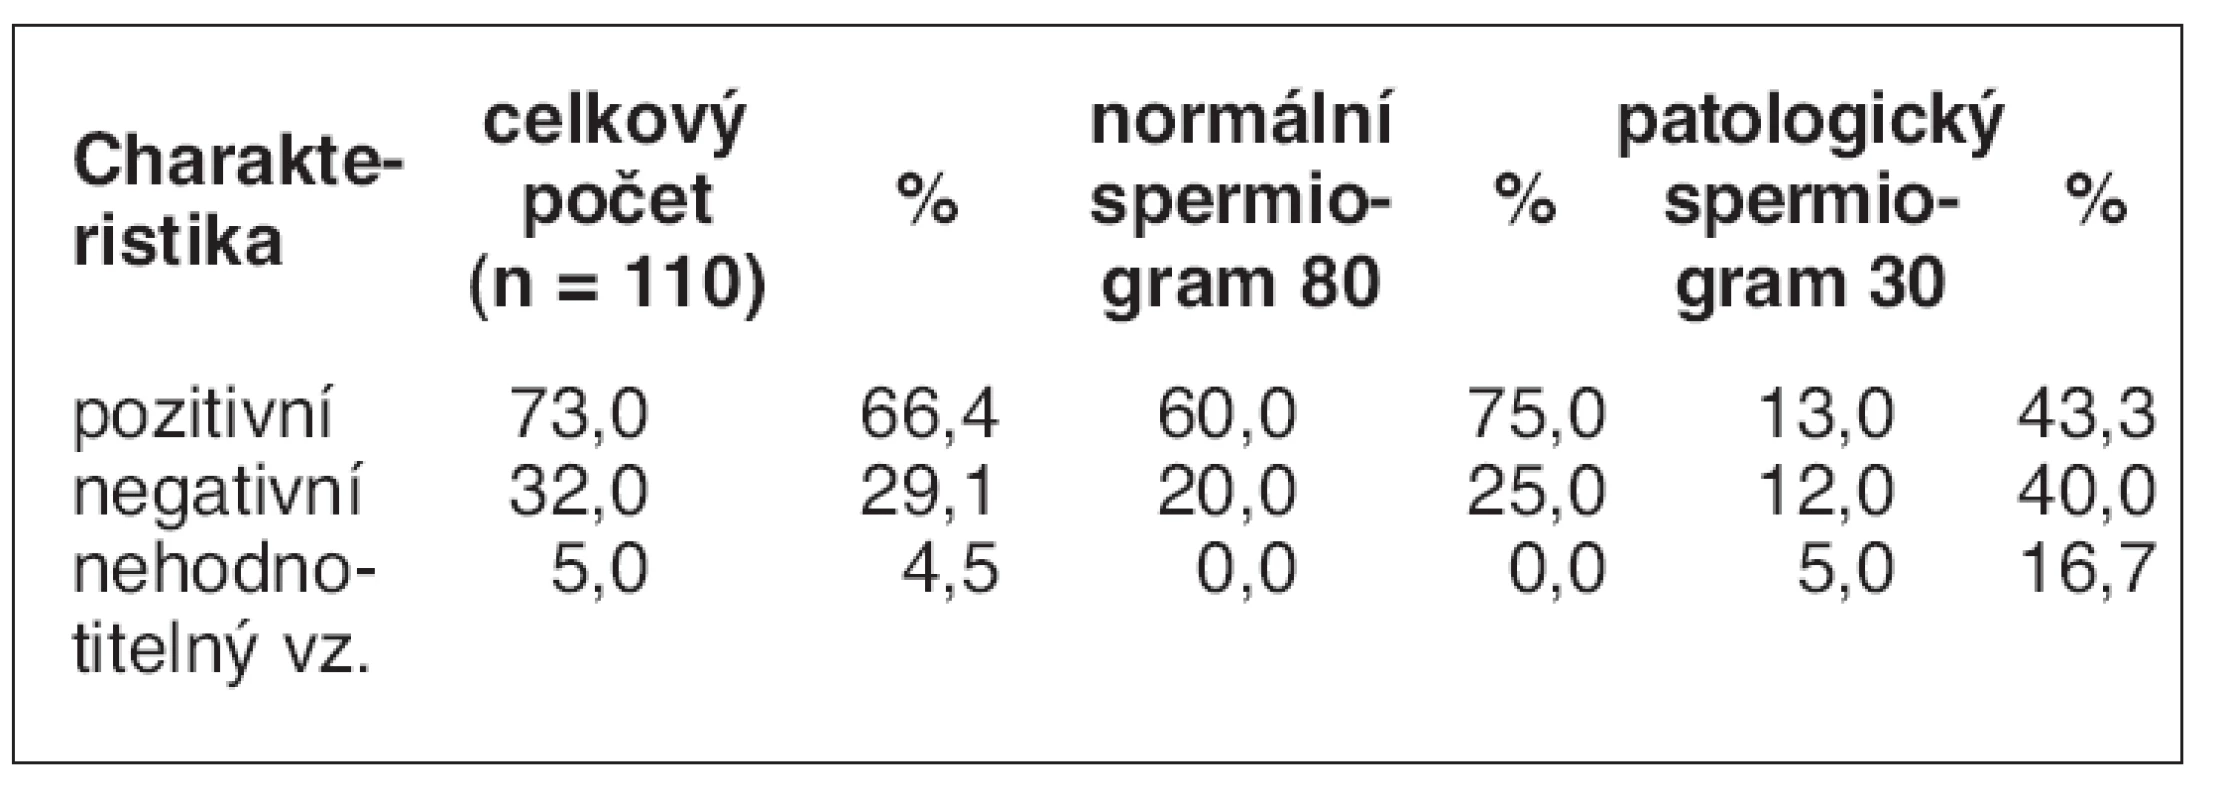 Výsledky hodnocení přítomnosti
intraakrozomálních proteinů